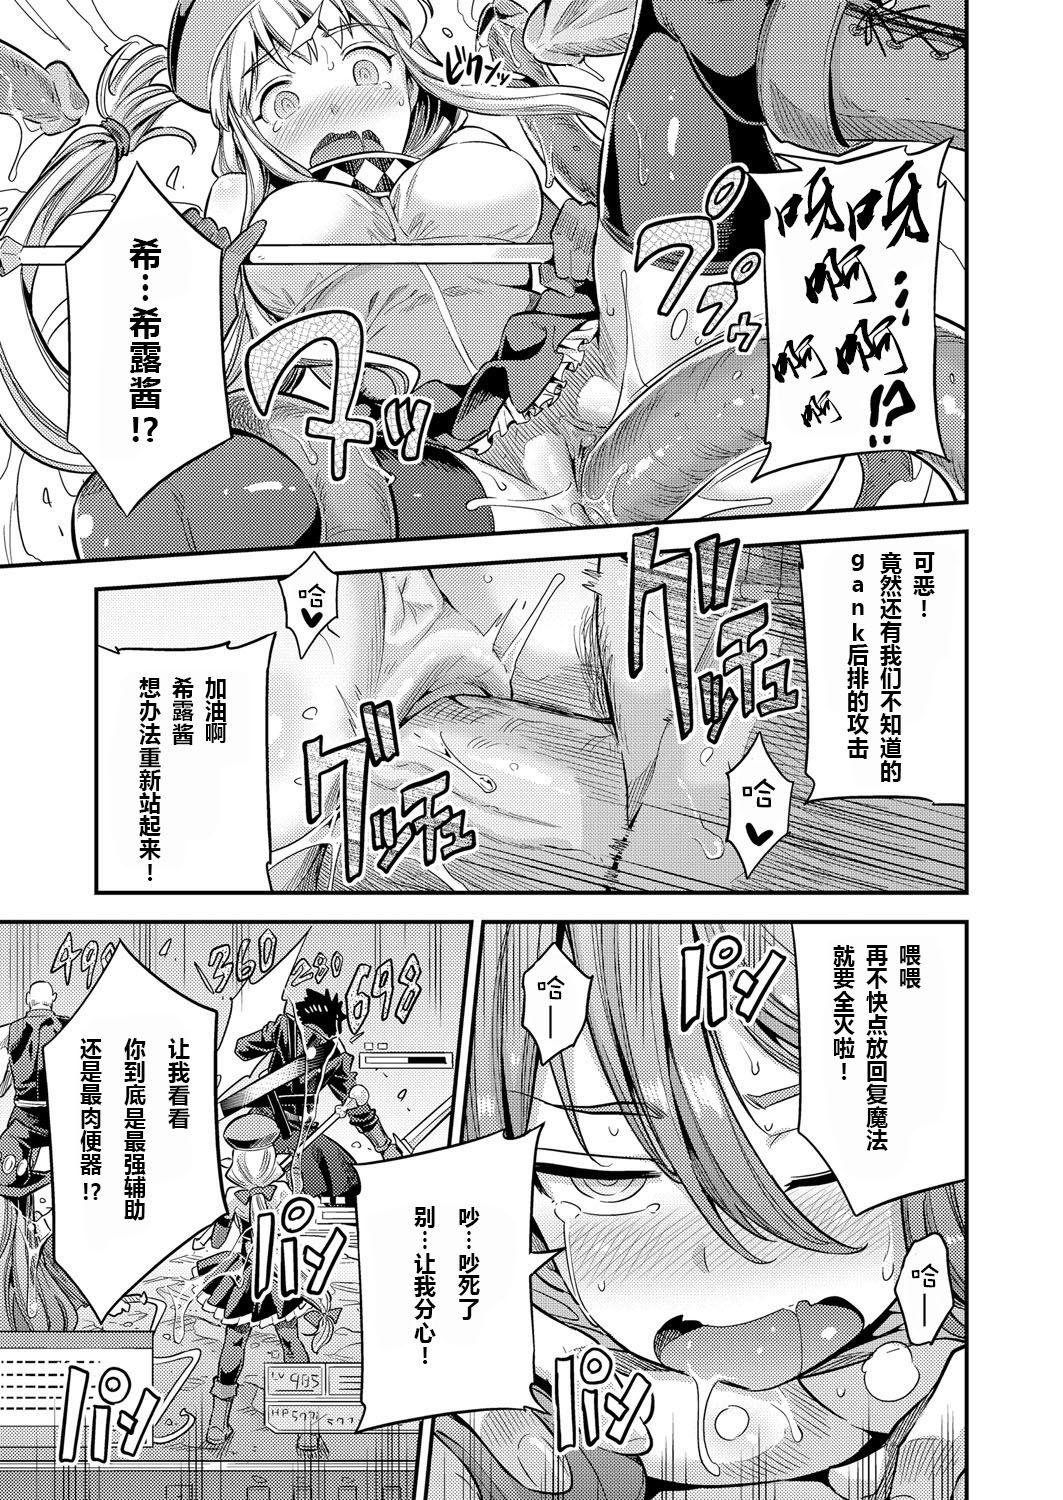 Great Fuck Watashi ga Ittara Mina Shinjau Netoge Haijin wa Tanetsuke Rape saretemo Te ga Hanasenain desu Ladyboy - Page 11